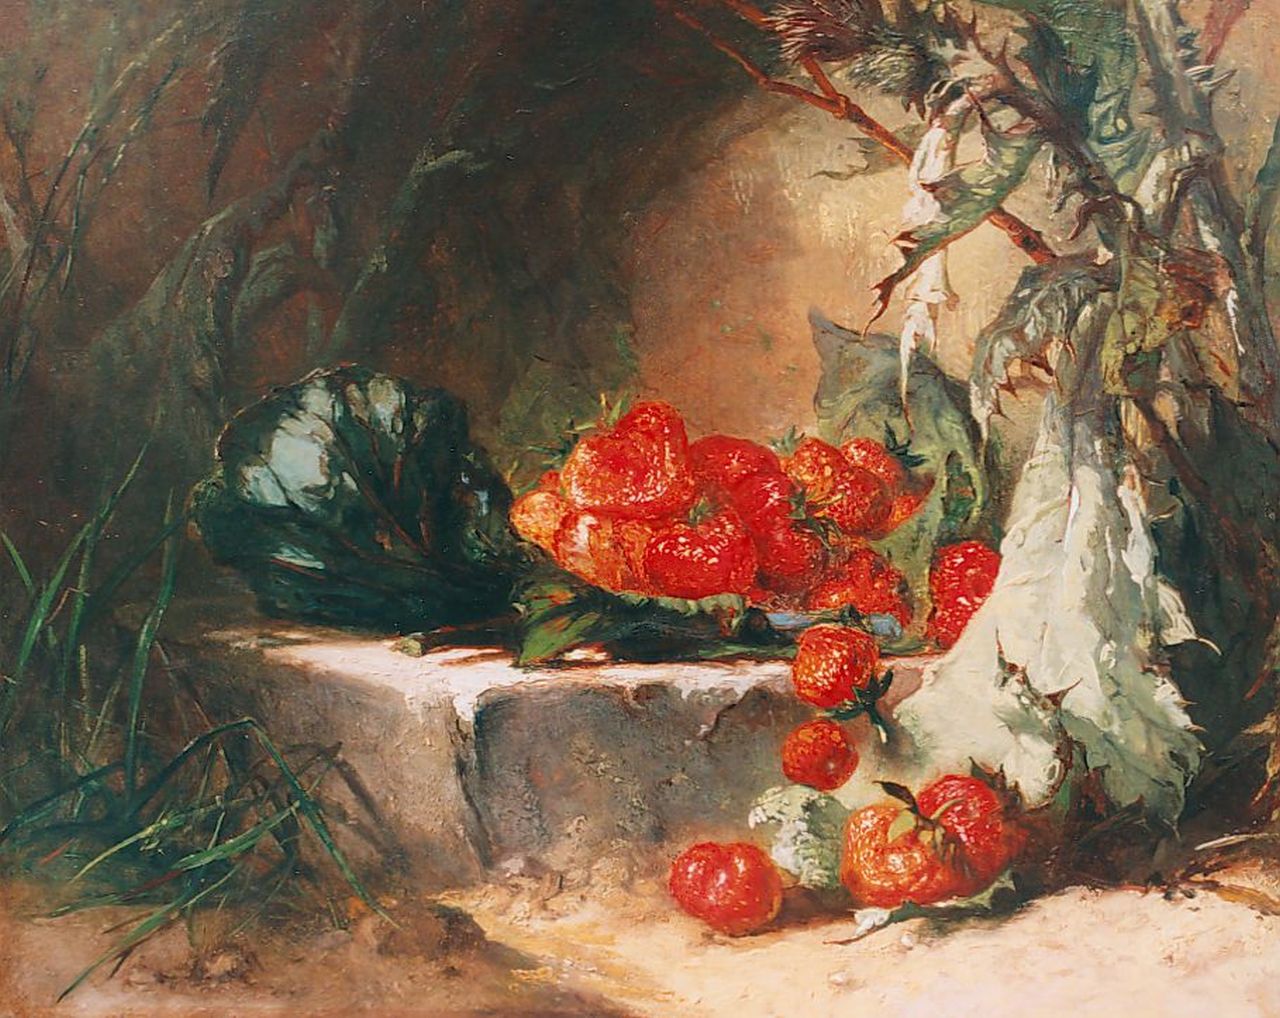 Vos M.  | Maria Vos, A still life with strawberries, Öl auf Holz 33,2 x 41,3 cm